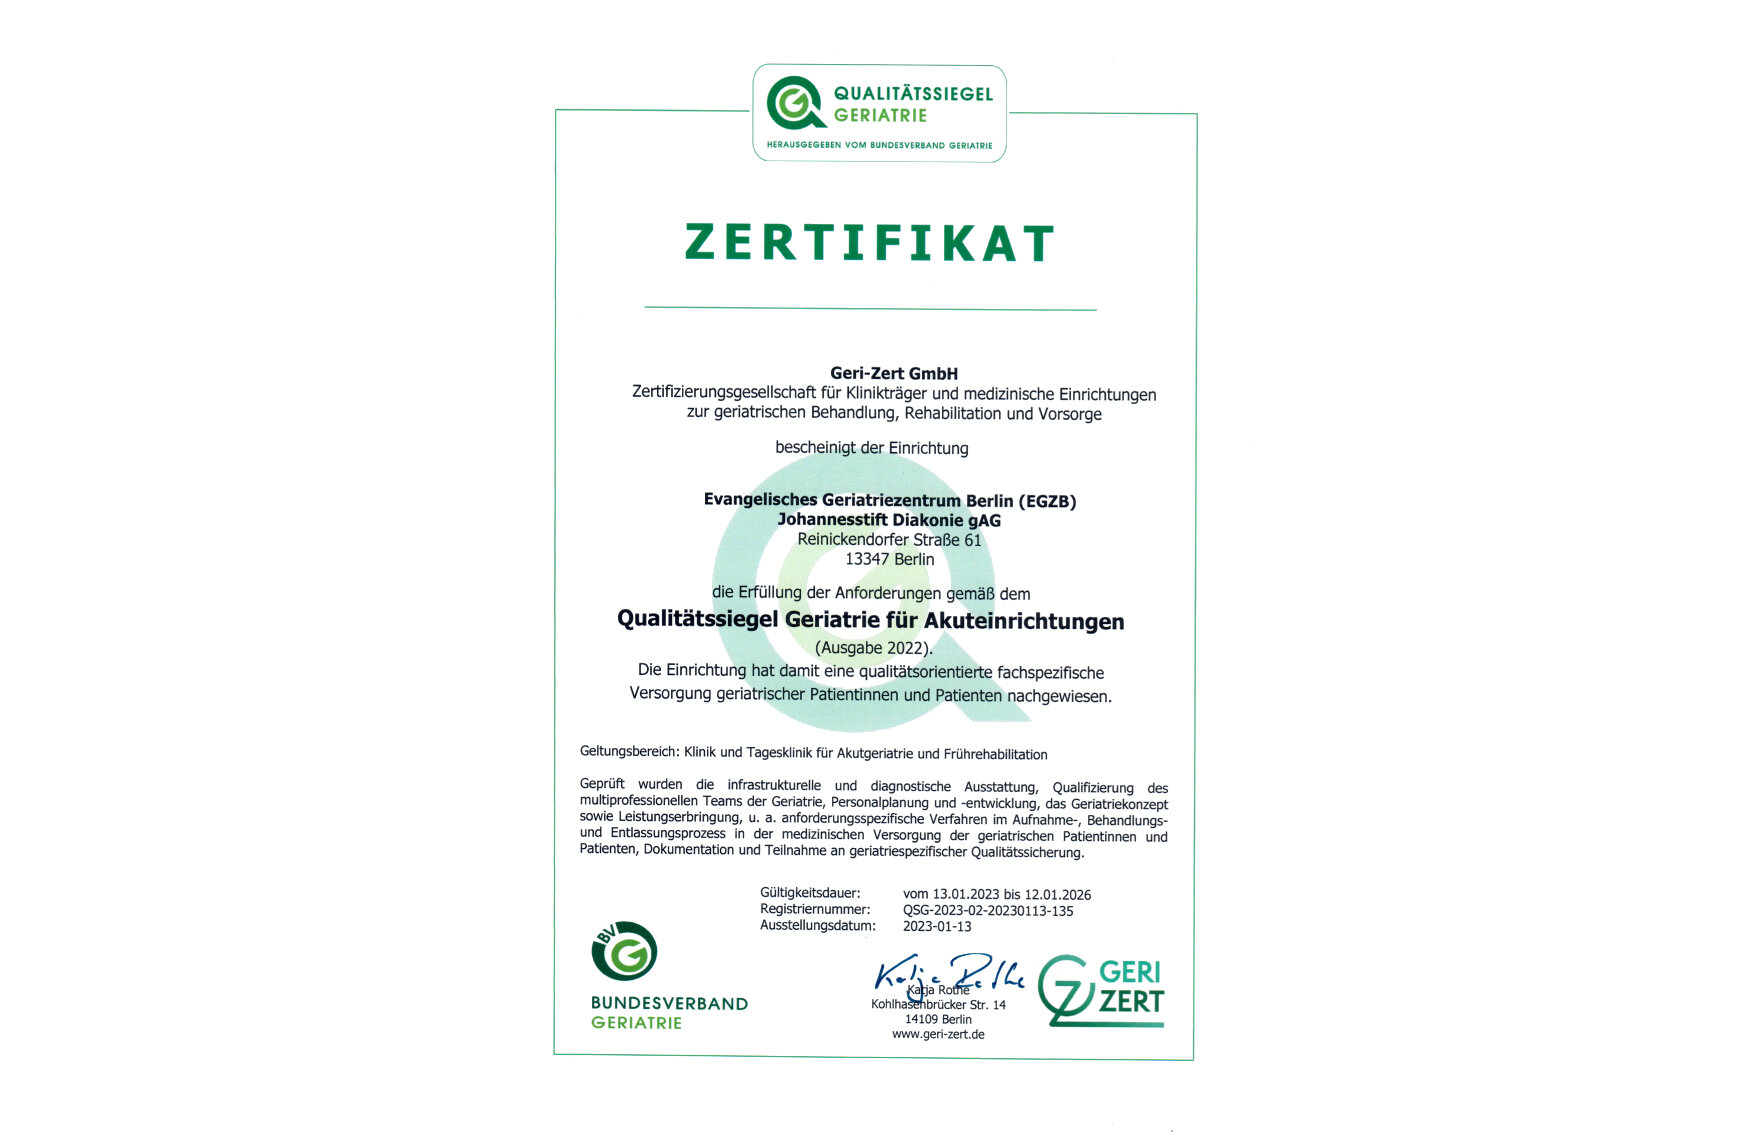 Zertifikat: Qualitätssiegel Geriatrie für Akutkliniken